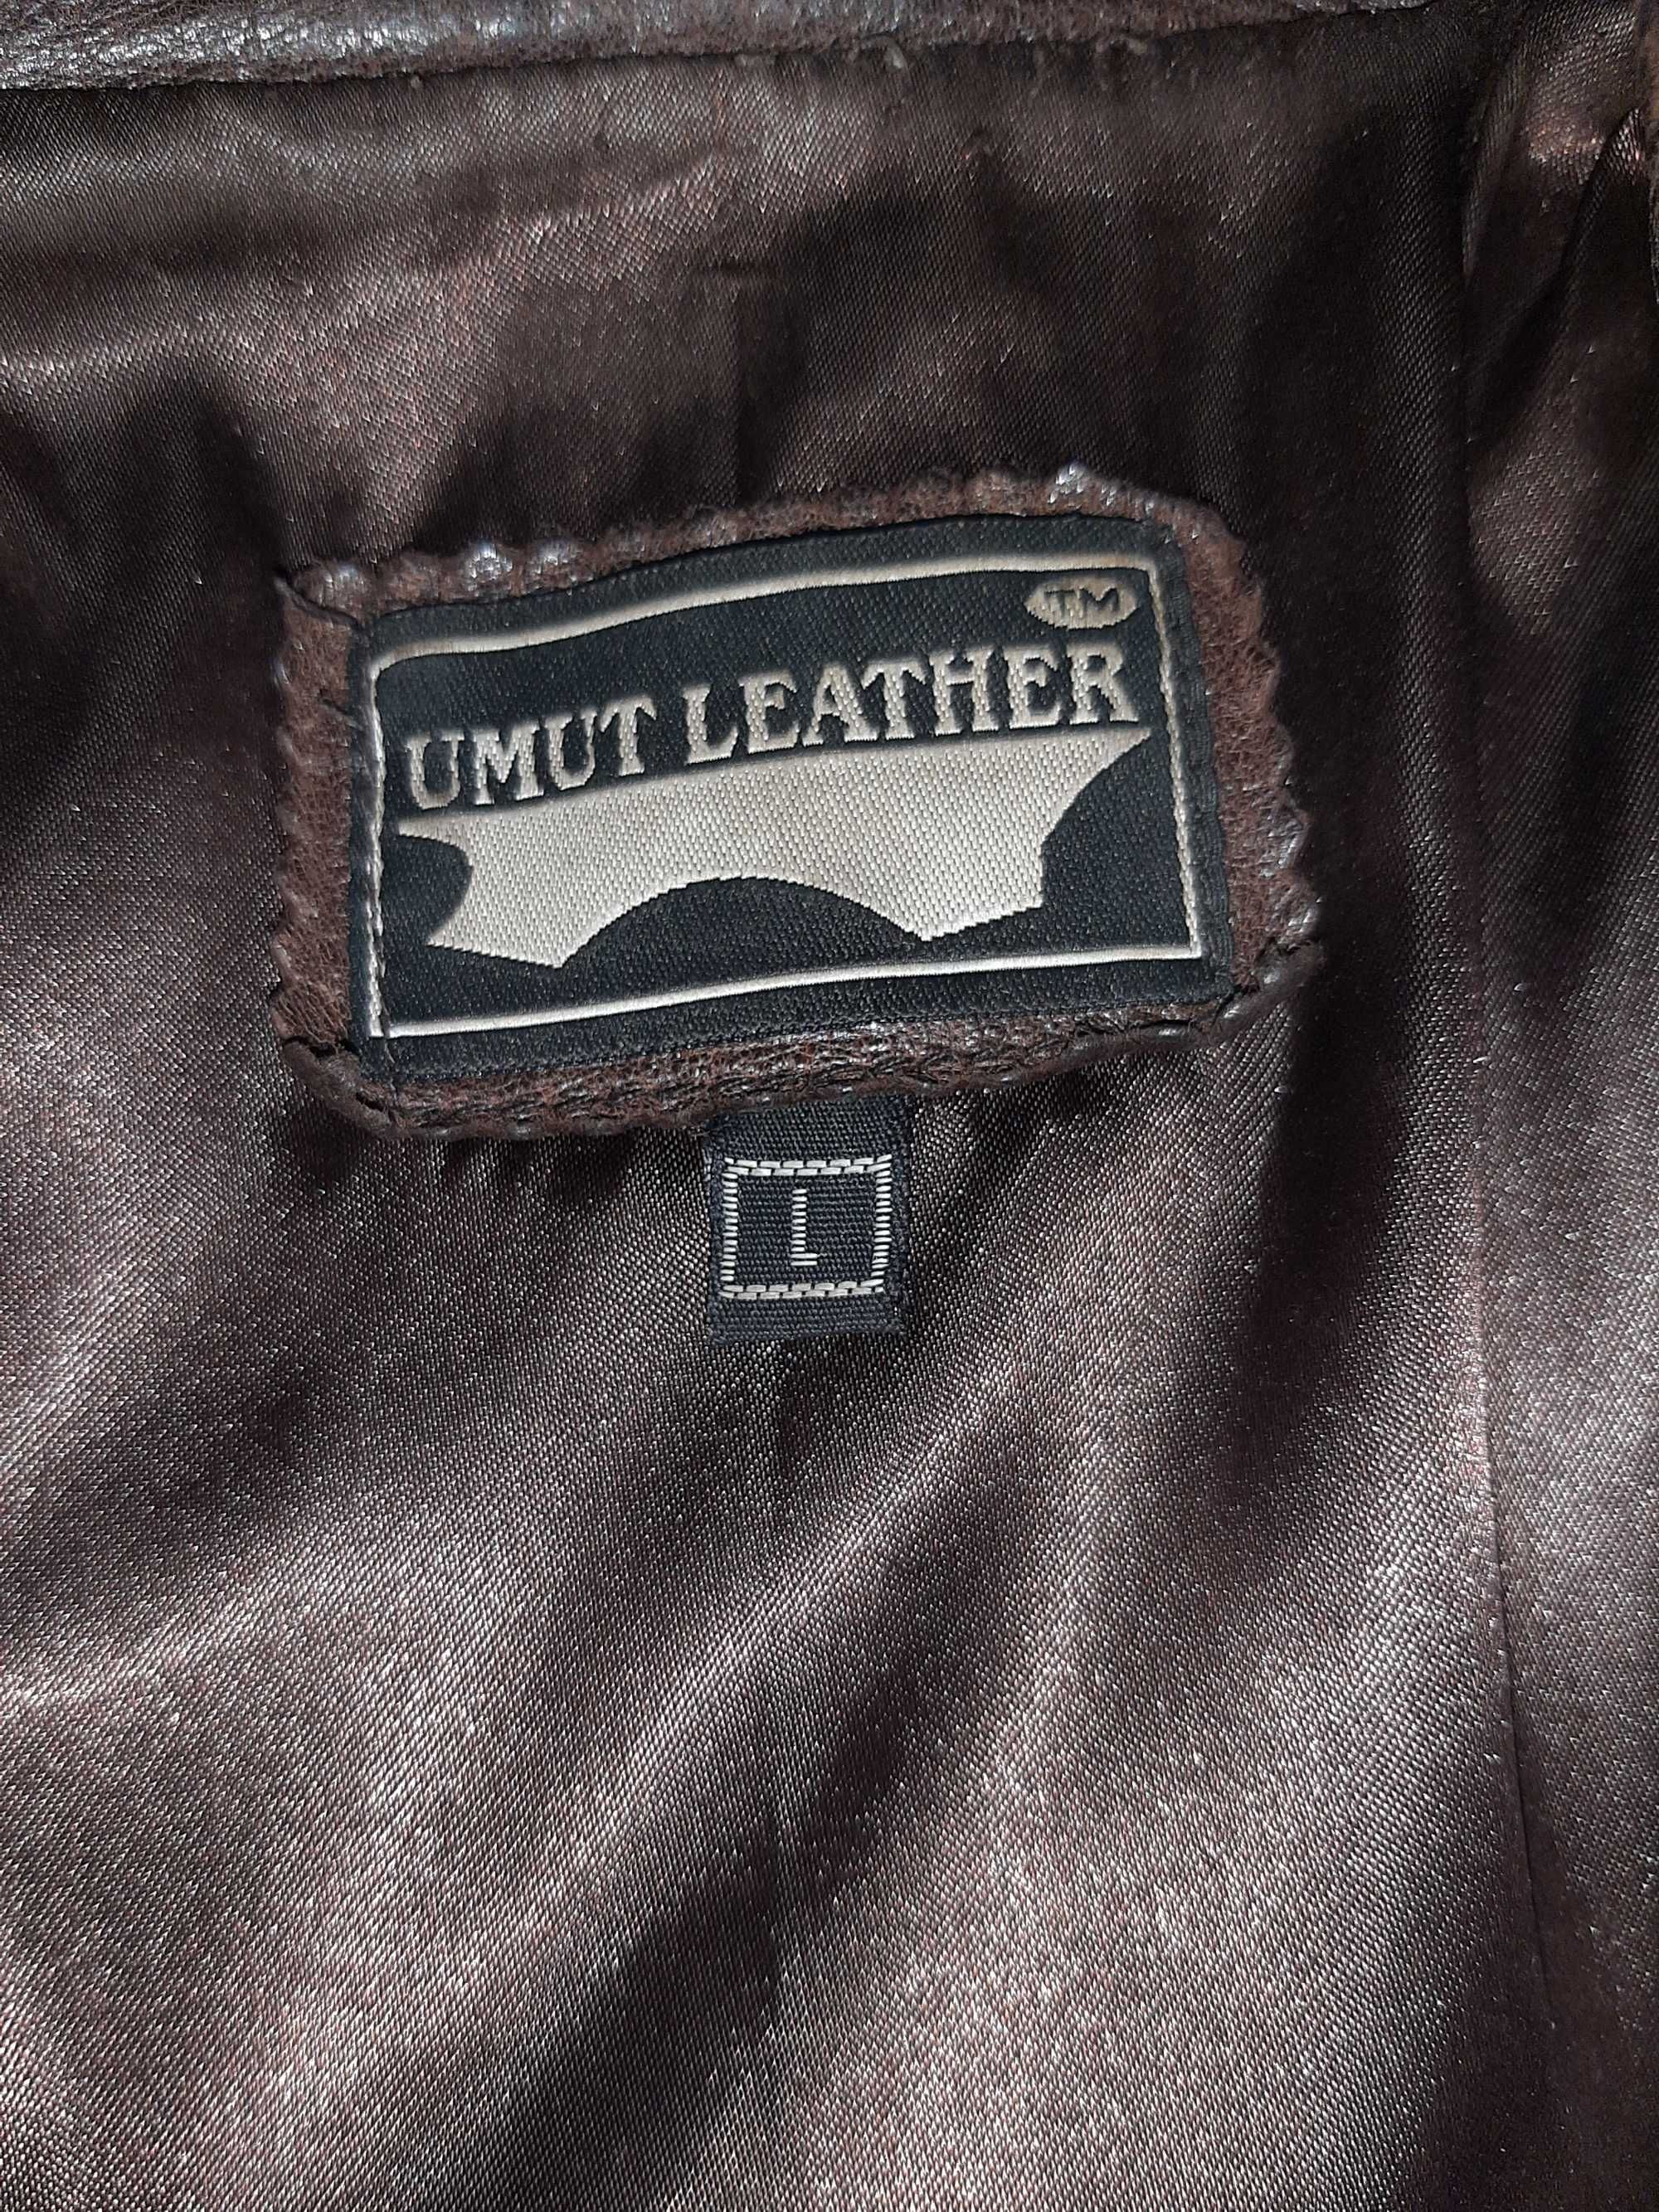 Женская кожаная куртка Umut leather, хорошее состояние!